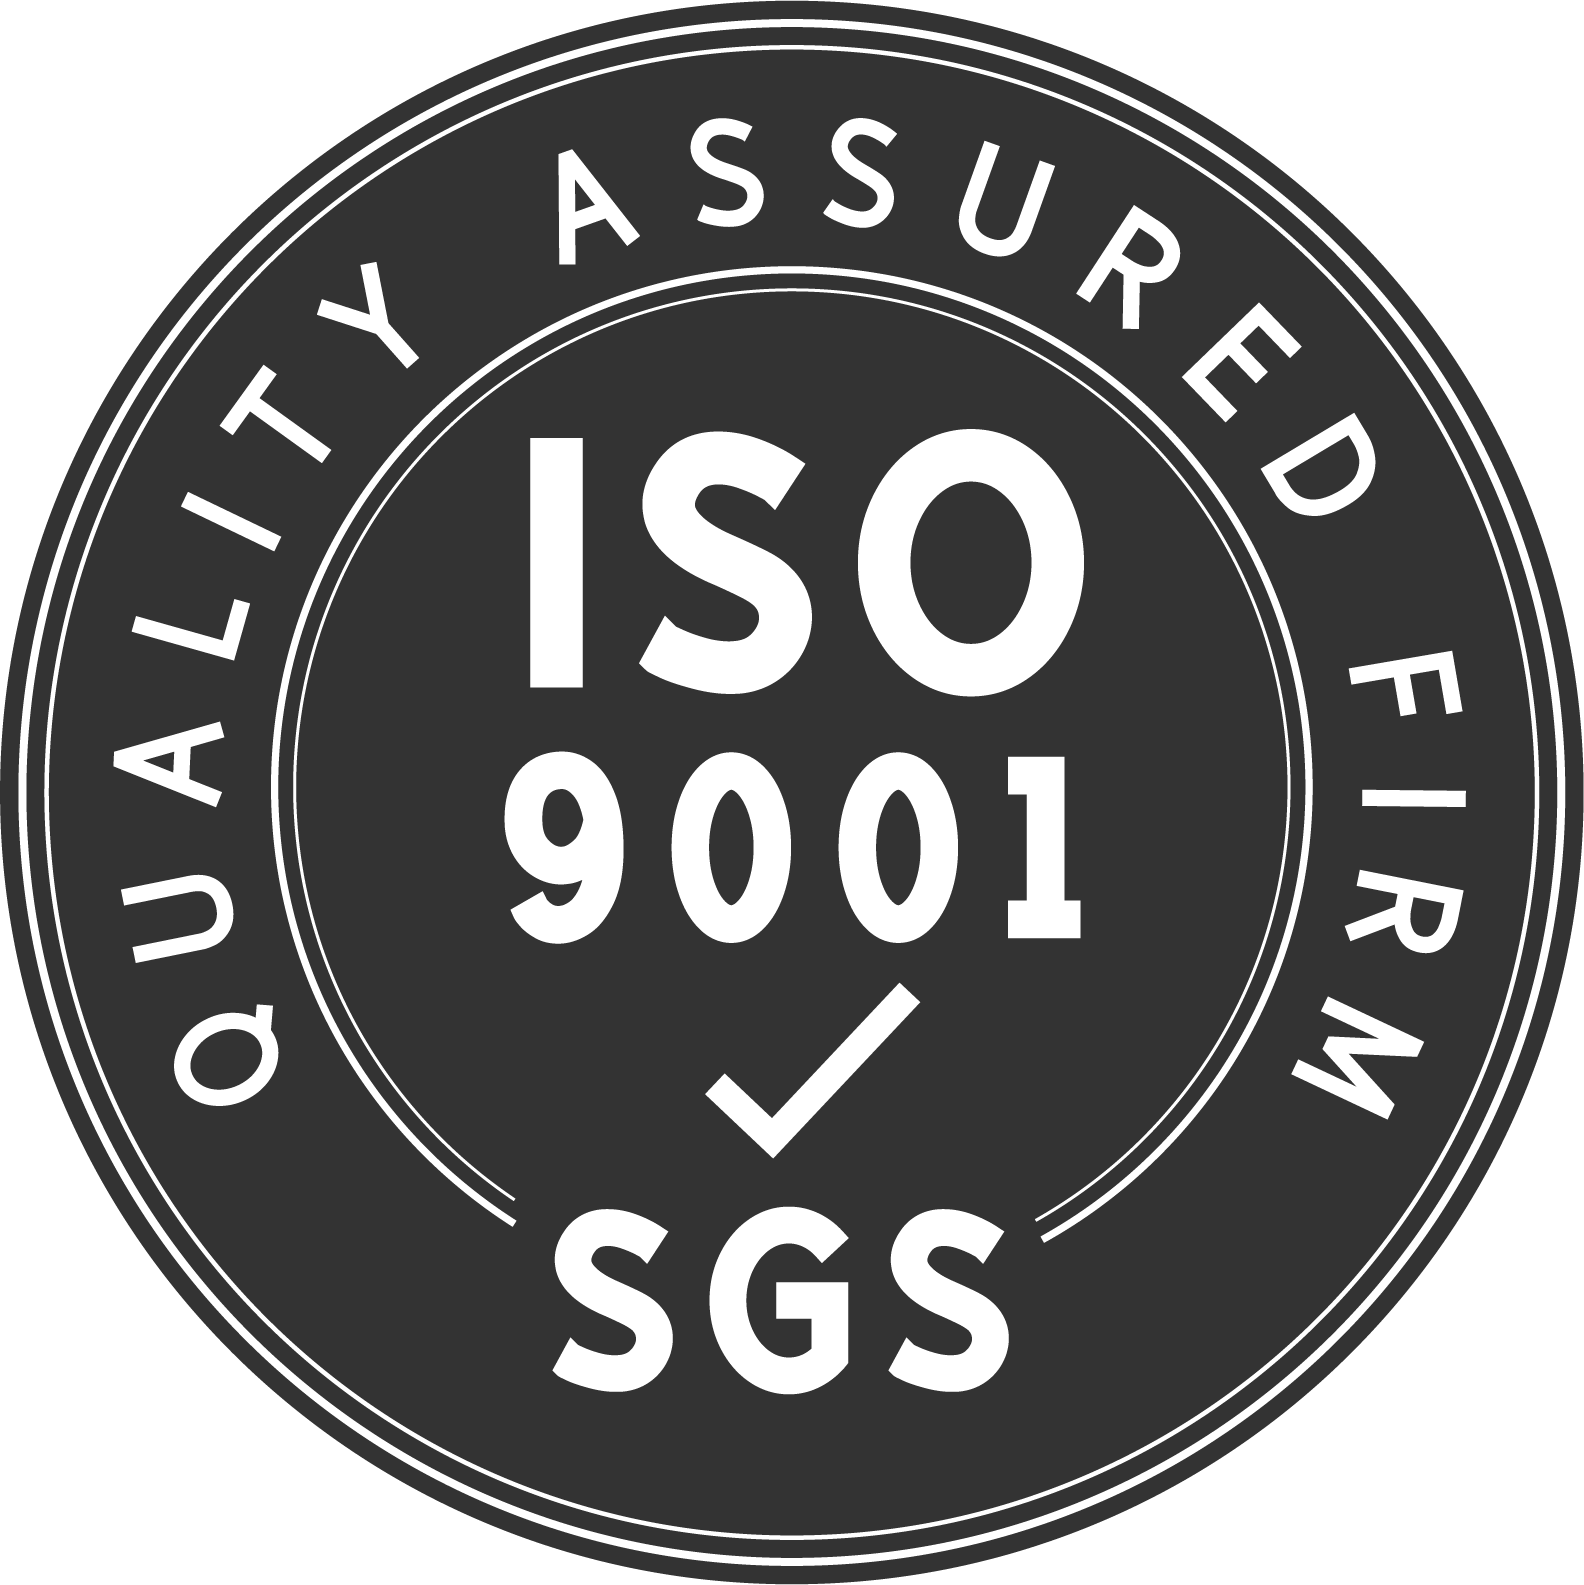 Unser Werk ist ein nach ISO9001:2005 zertifizierter Hersteller hochwertiger Produkte